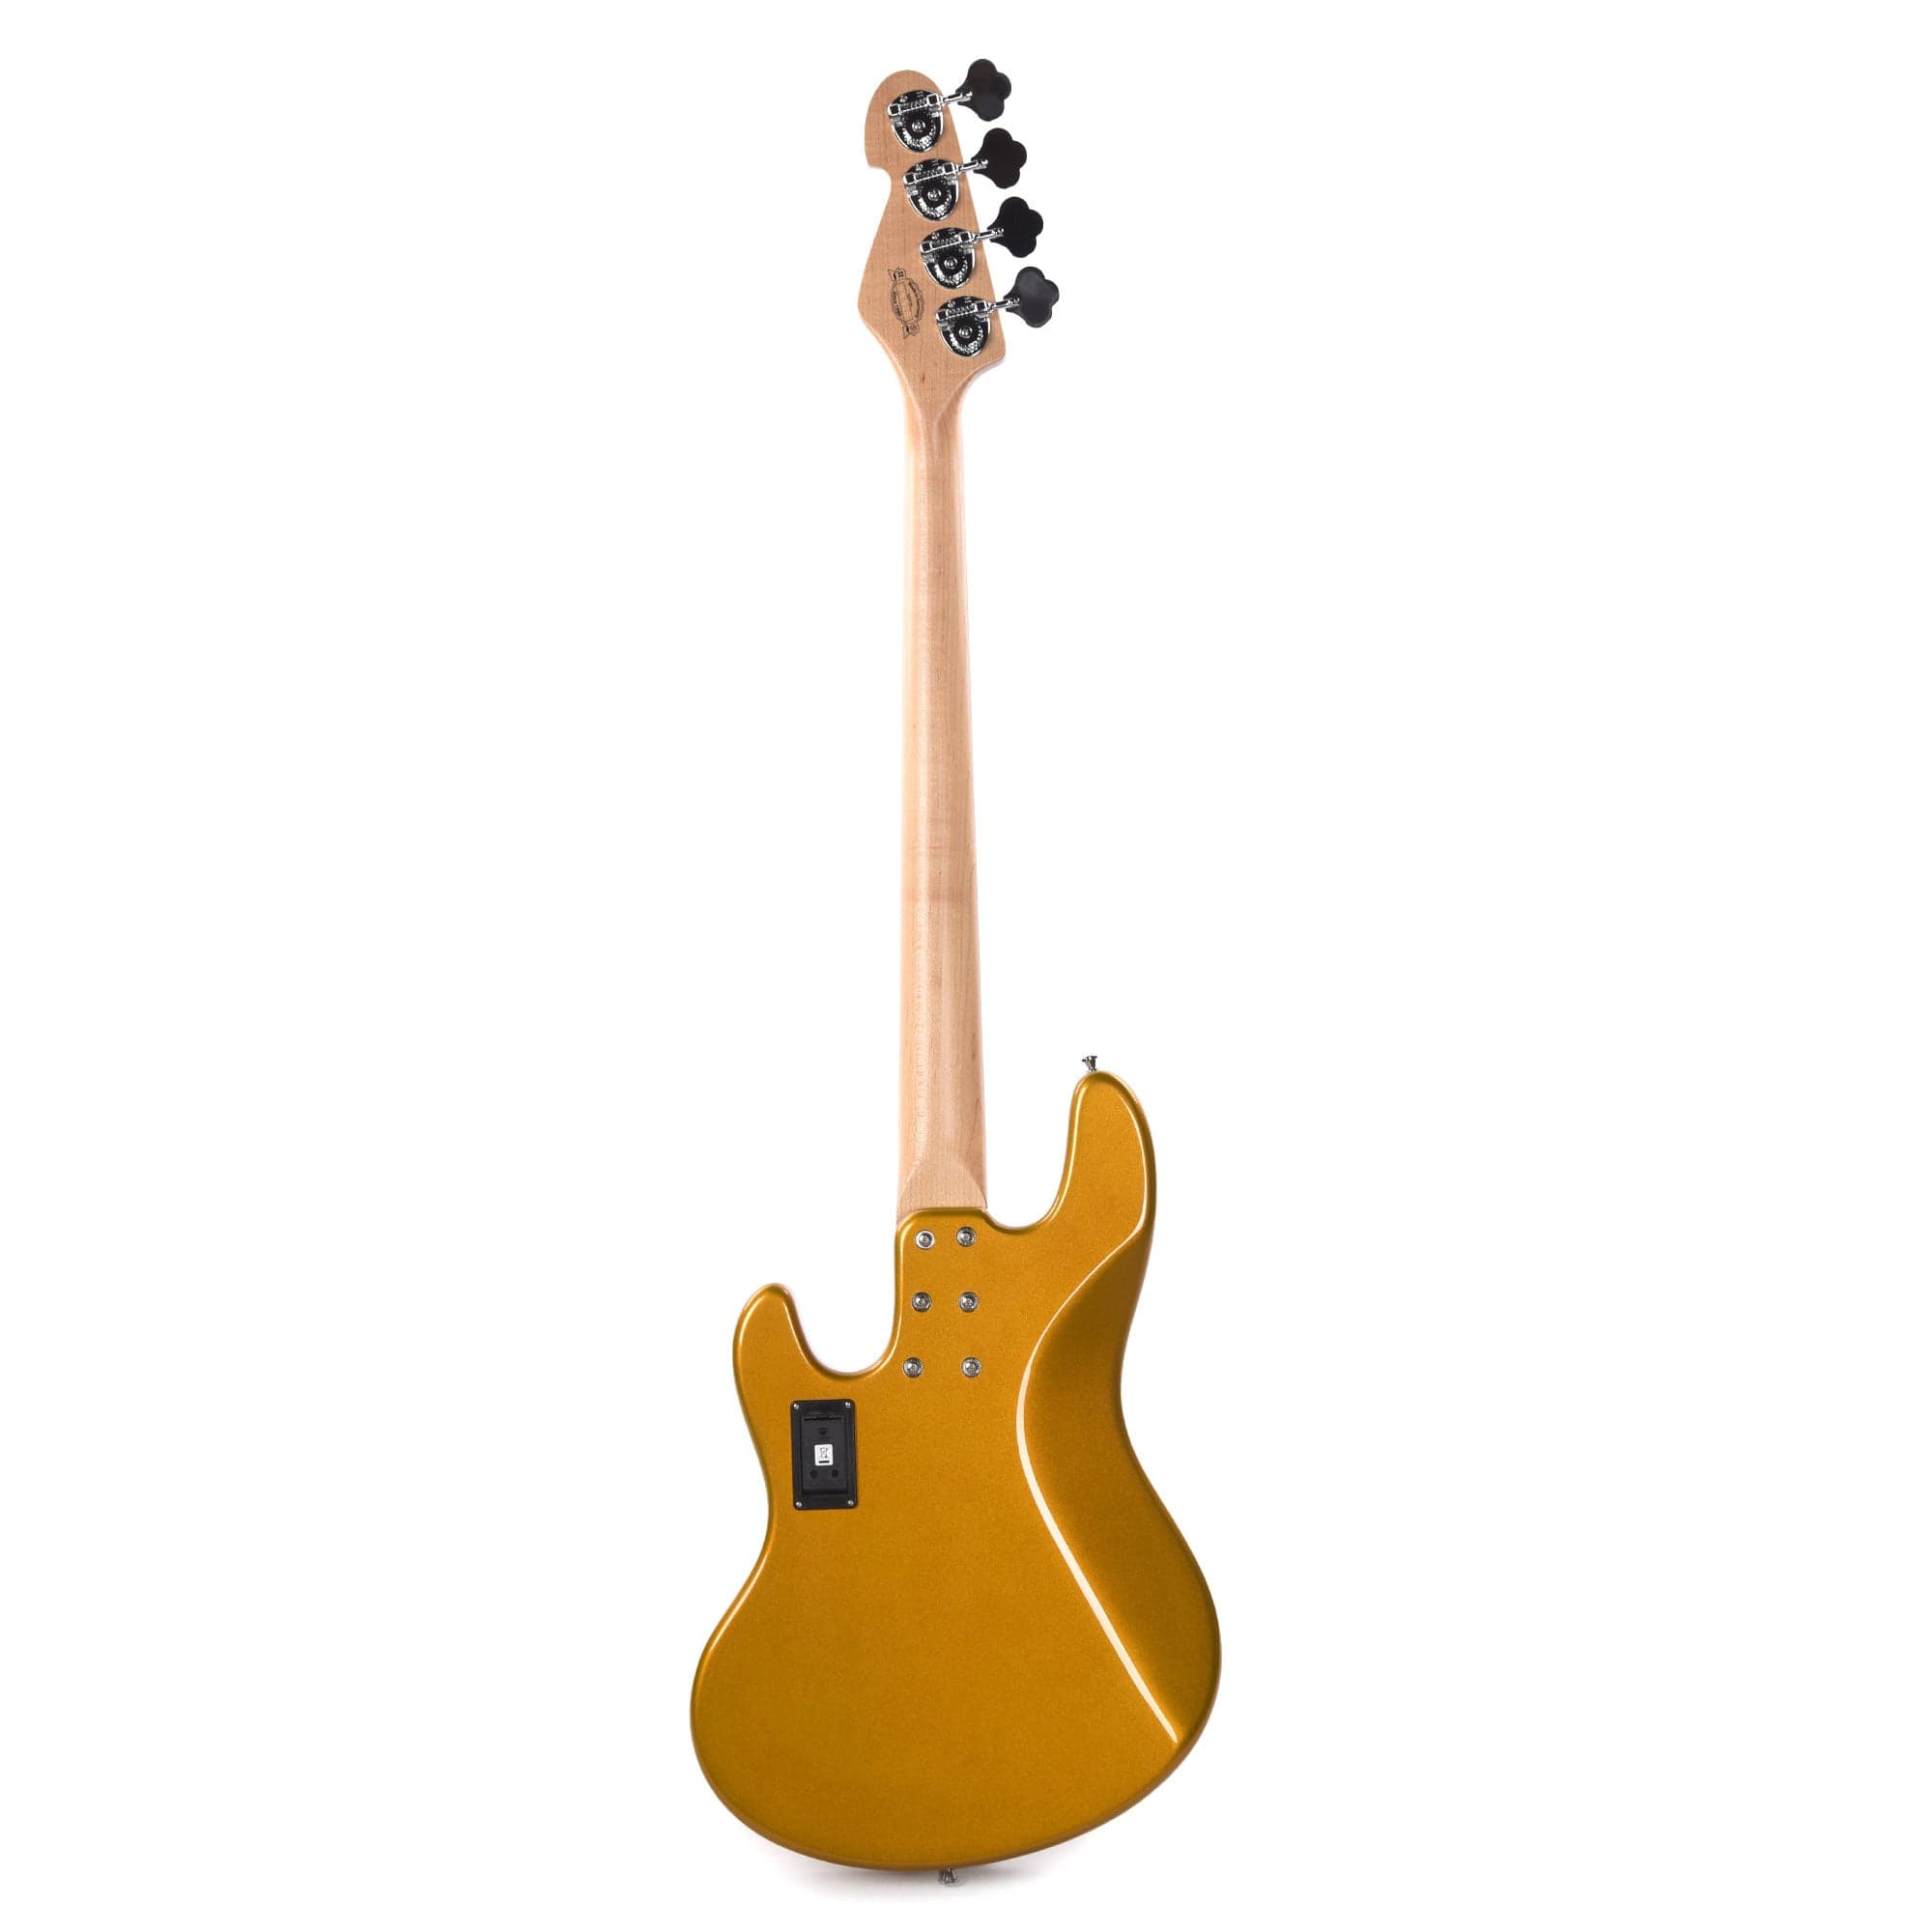 Sandberg California TT High Gloss Gold w/Rosewood Fingerboard Bass Guitars / 4-String